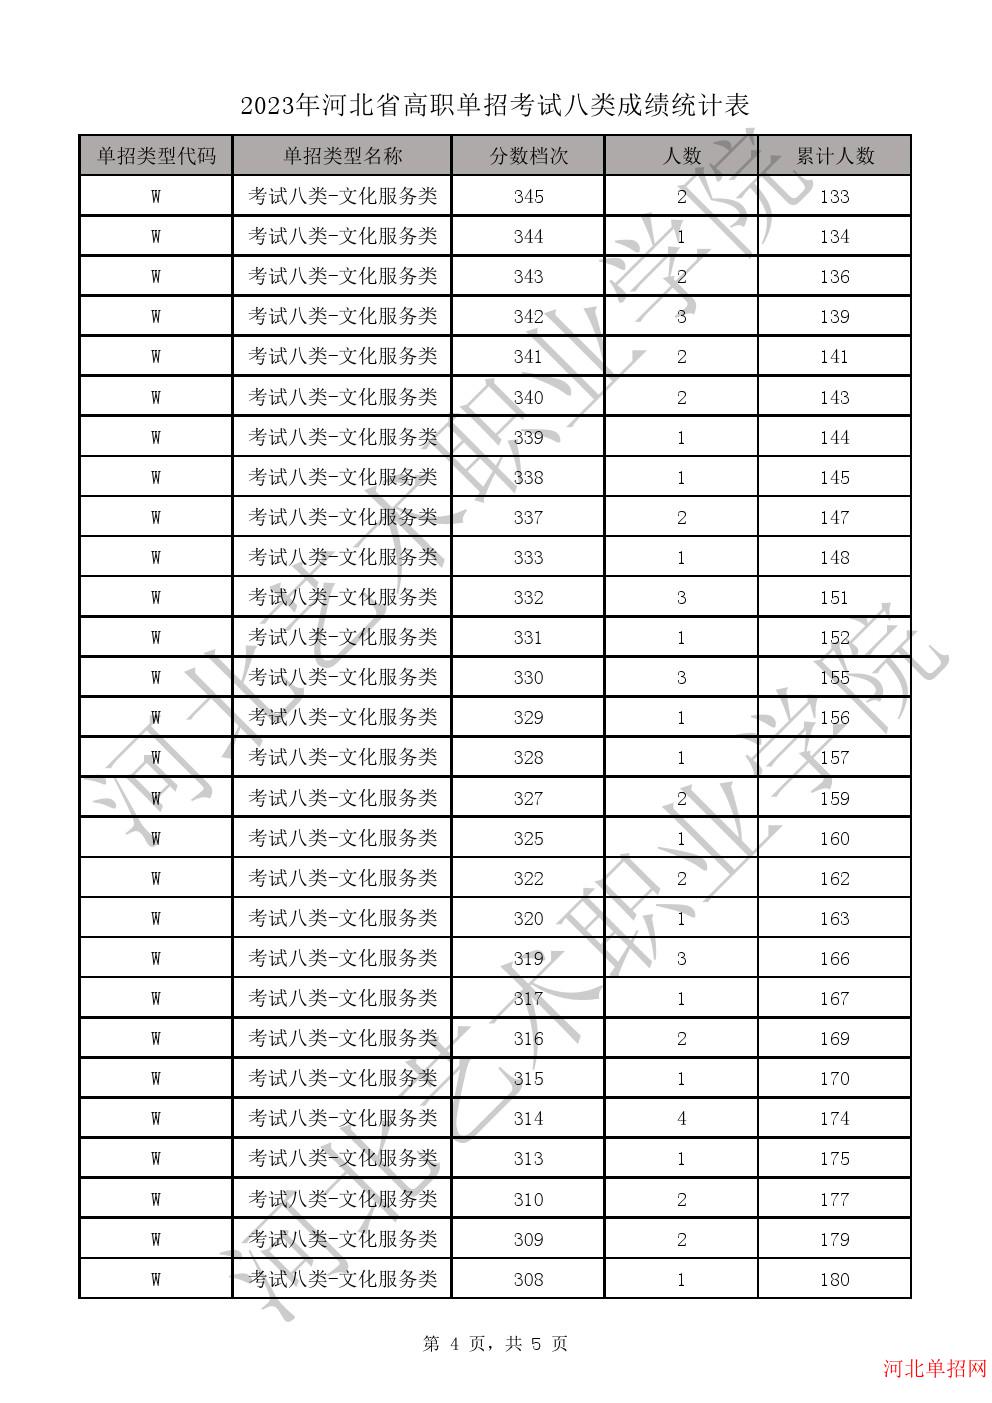 2023年河北省高职单招考试八类一分一档表-W学问服务类一分一档表 图4